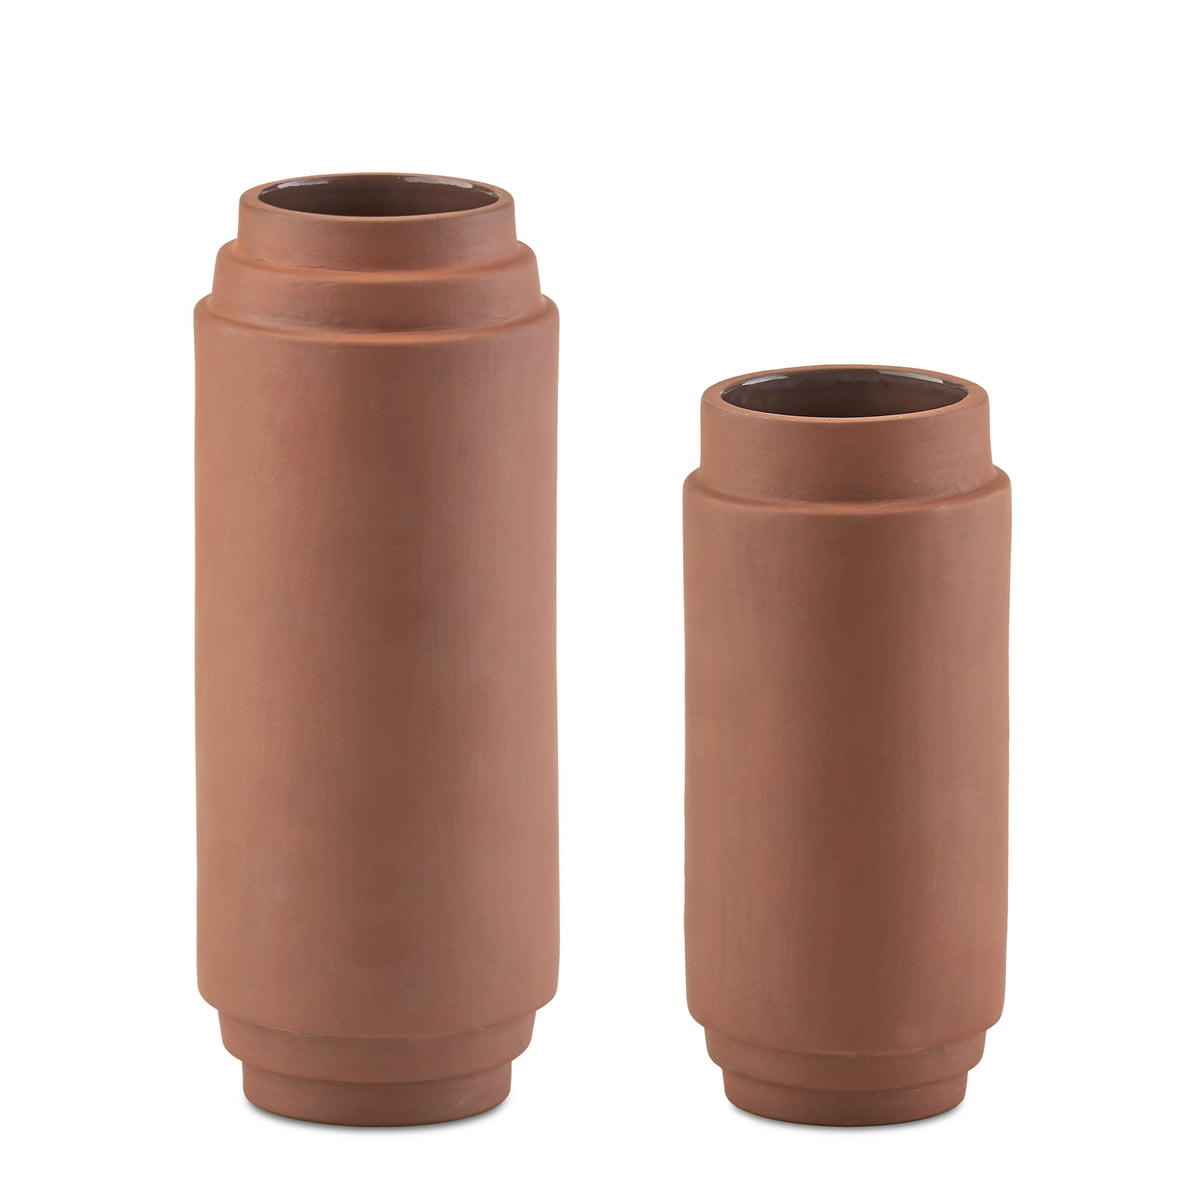 10 Salt and pepper grinder set designs for the modern interior - COCO  LAPINE DESIGNCOCO LAPINE DESIGN